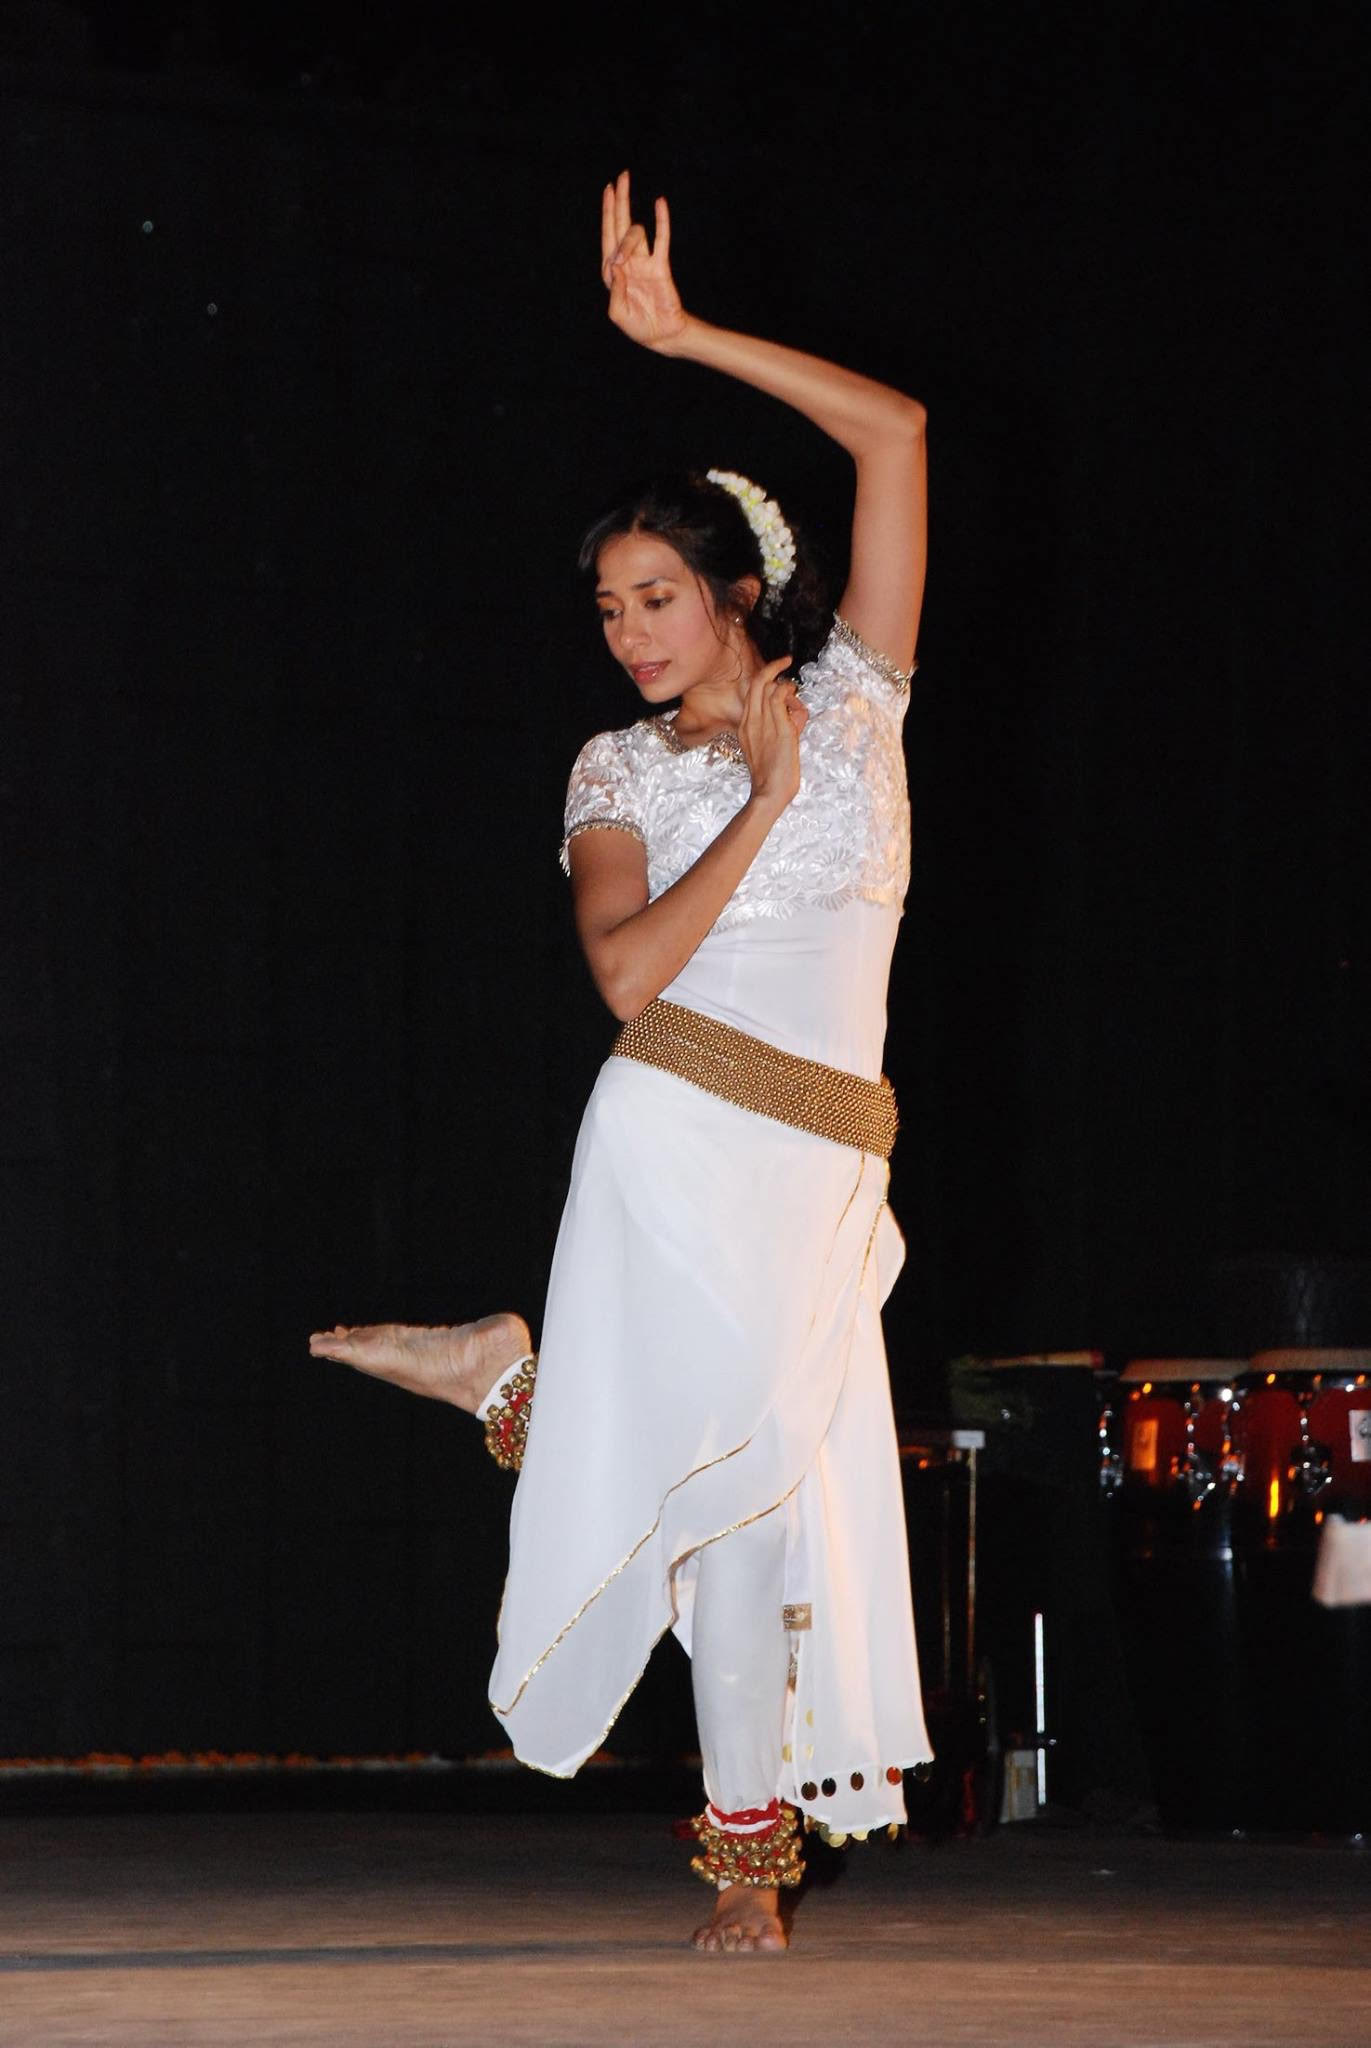 Rhythm Divine- Dancer Zia Nath on expressing spirituality through sacred dances